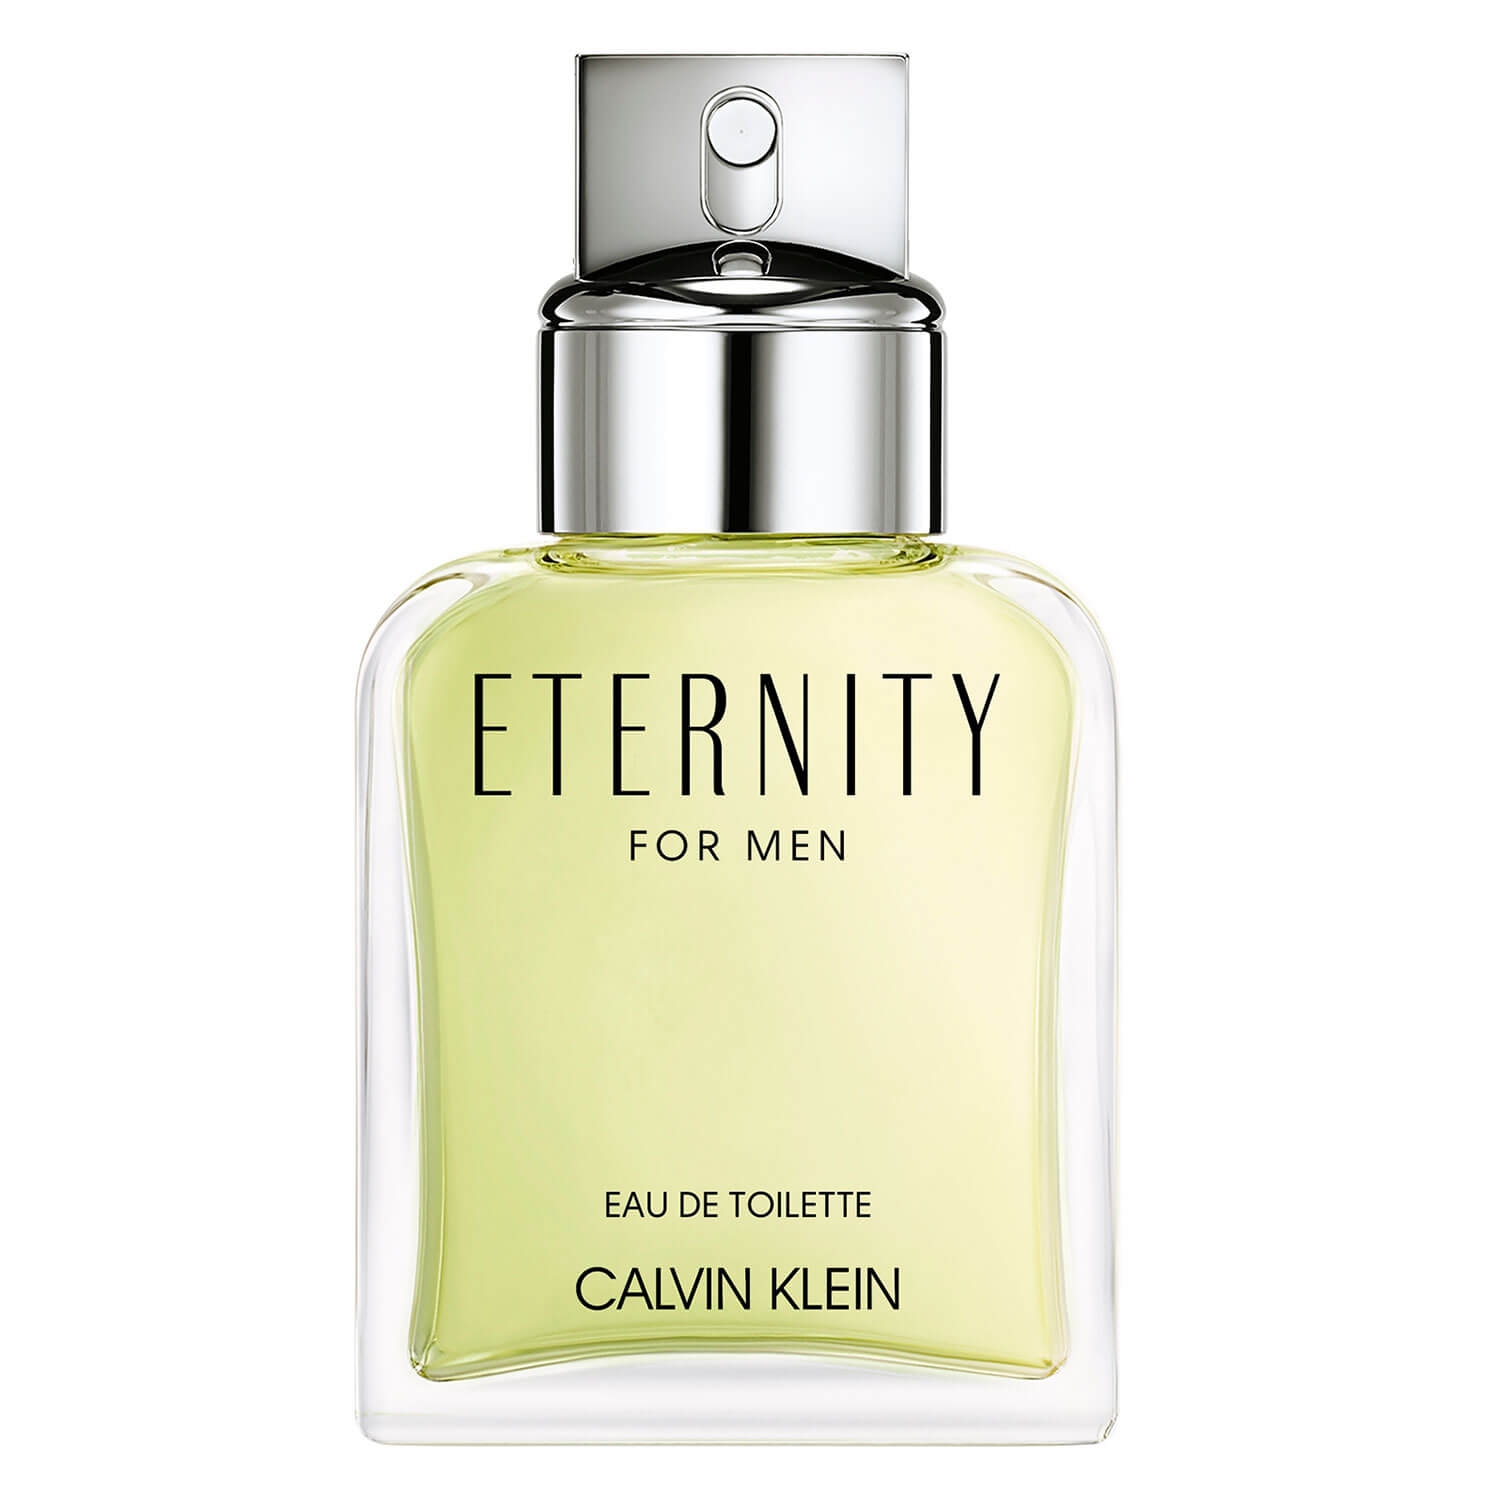 Produktbild von Eternity - For Men Eau de Toilette